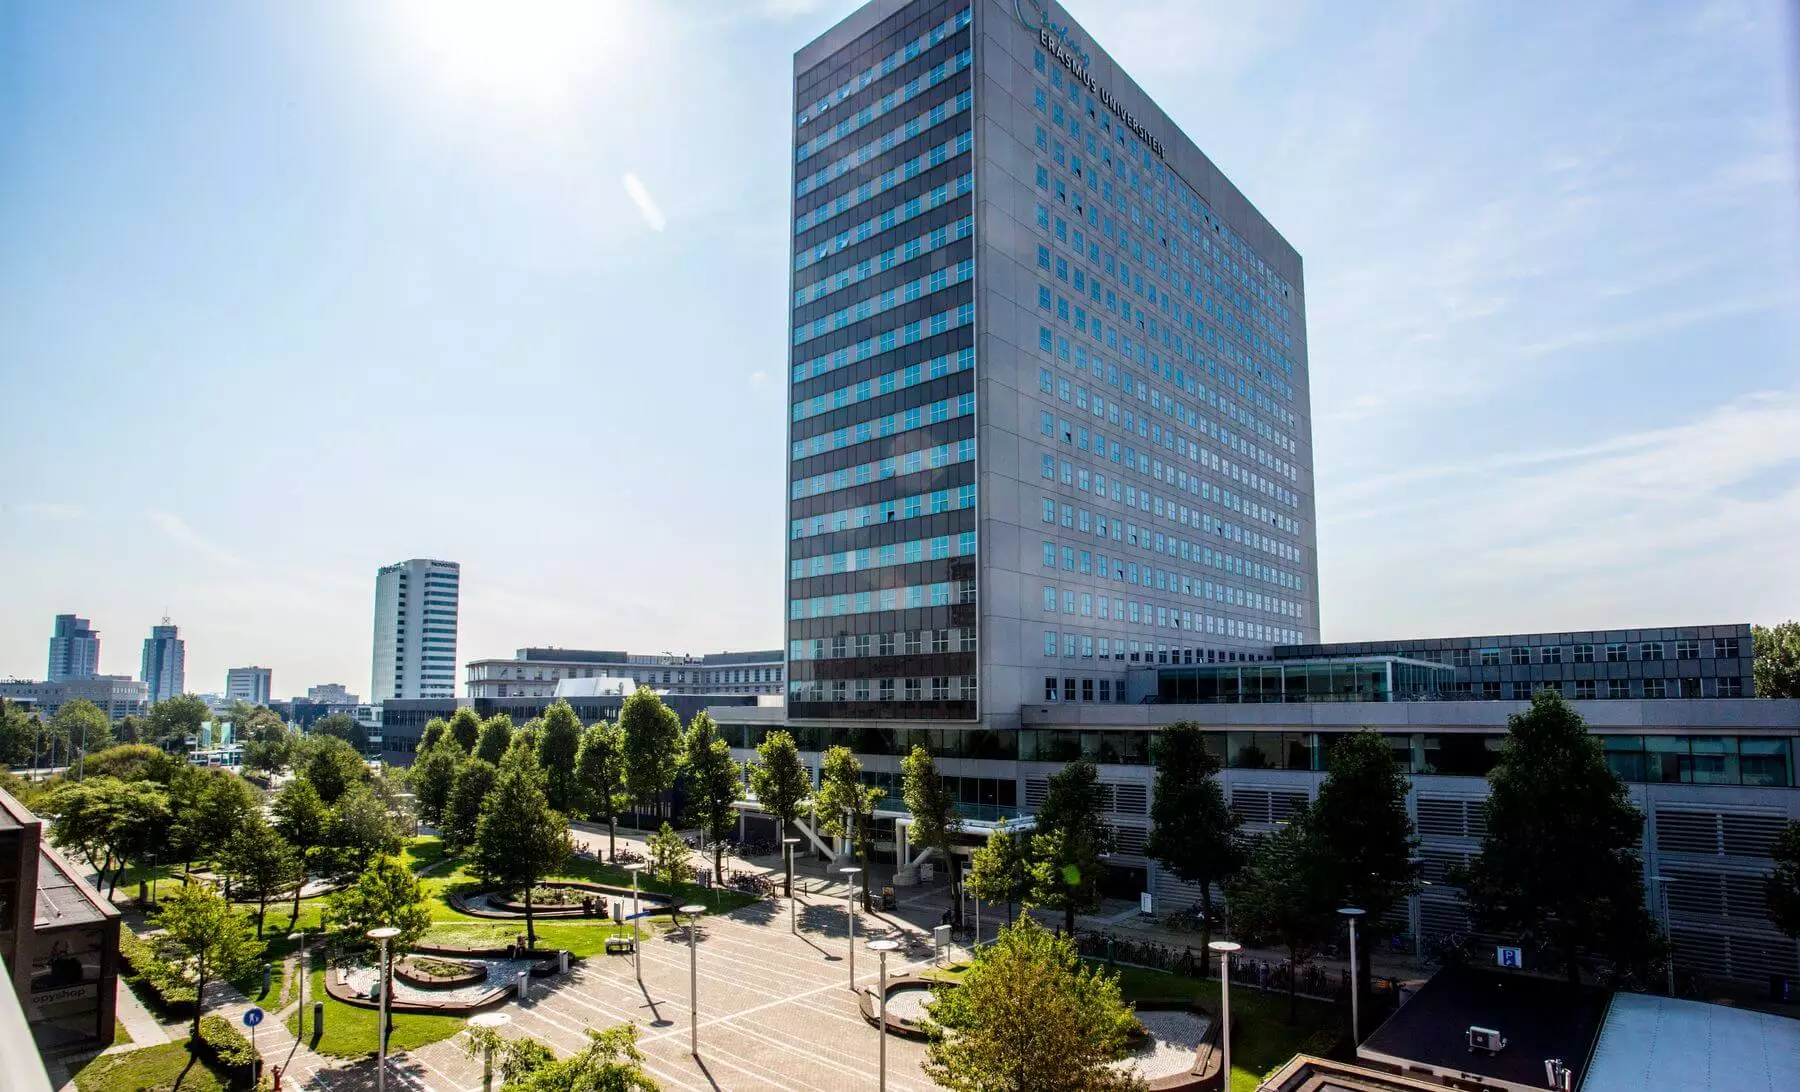 Rotterdam_School_of_Management_Erasmus_University_Campus_summer_